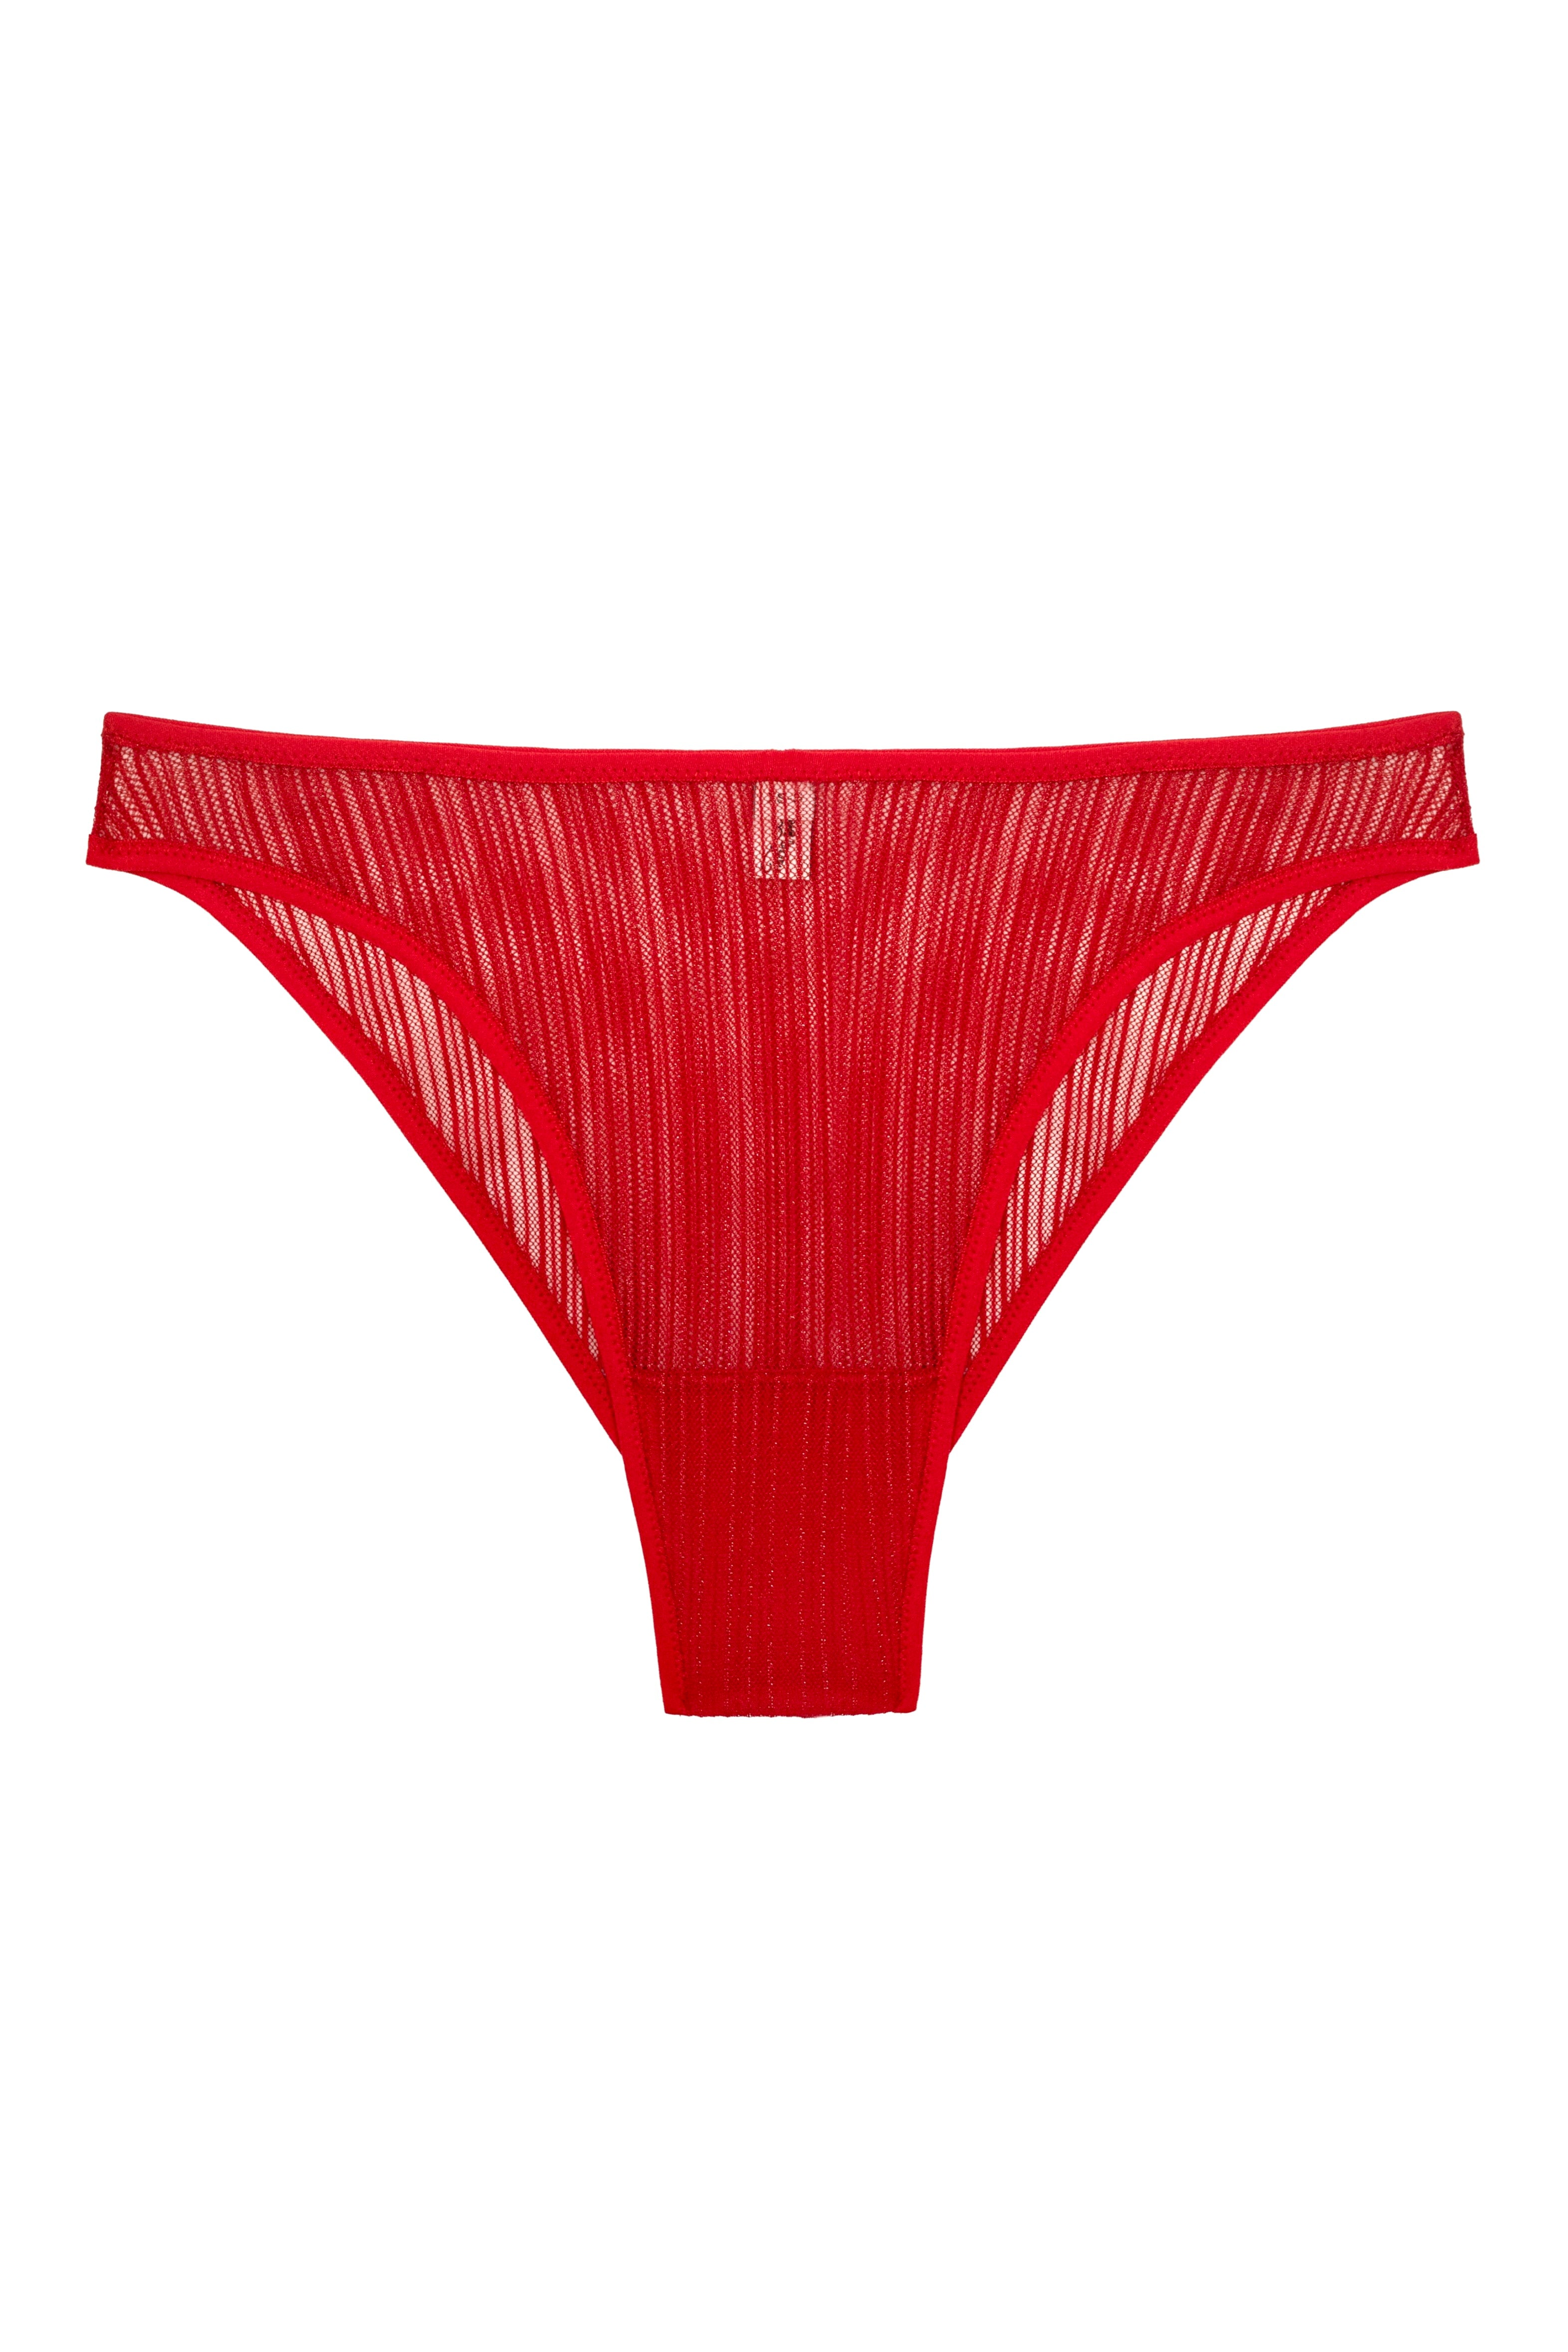 Lessie Red slip panties